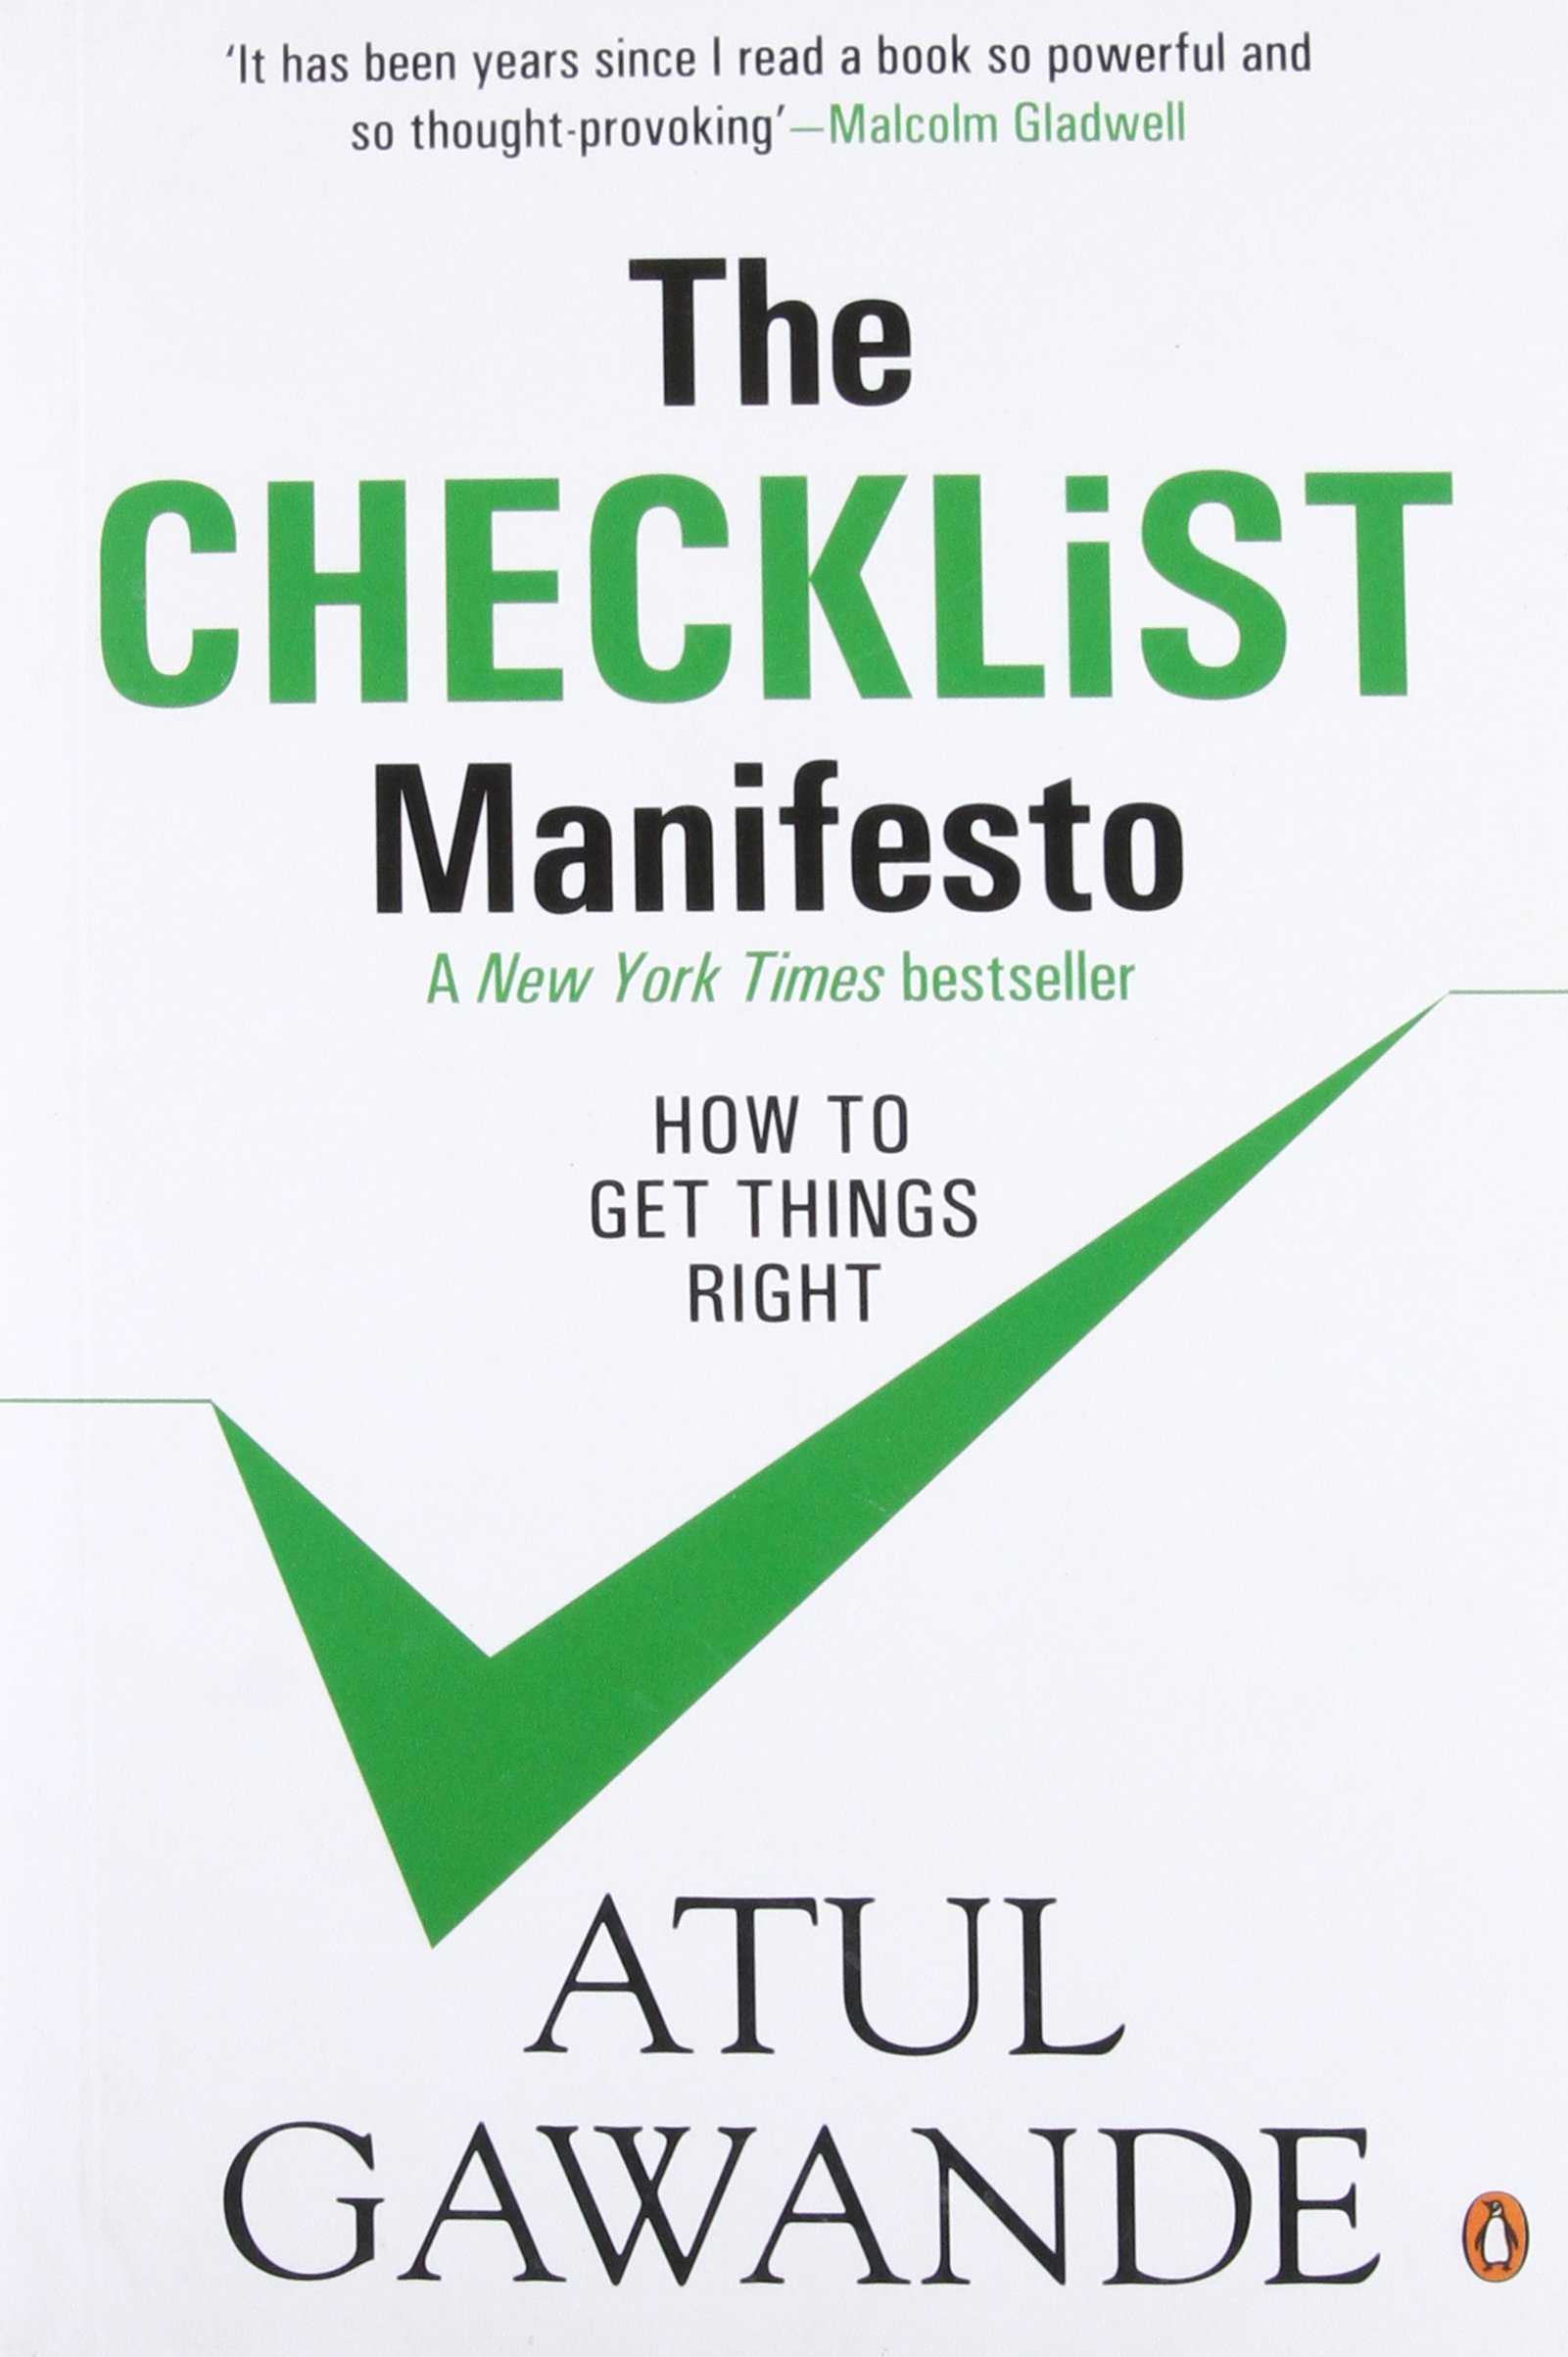 The Checklist Manifesto Book Review